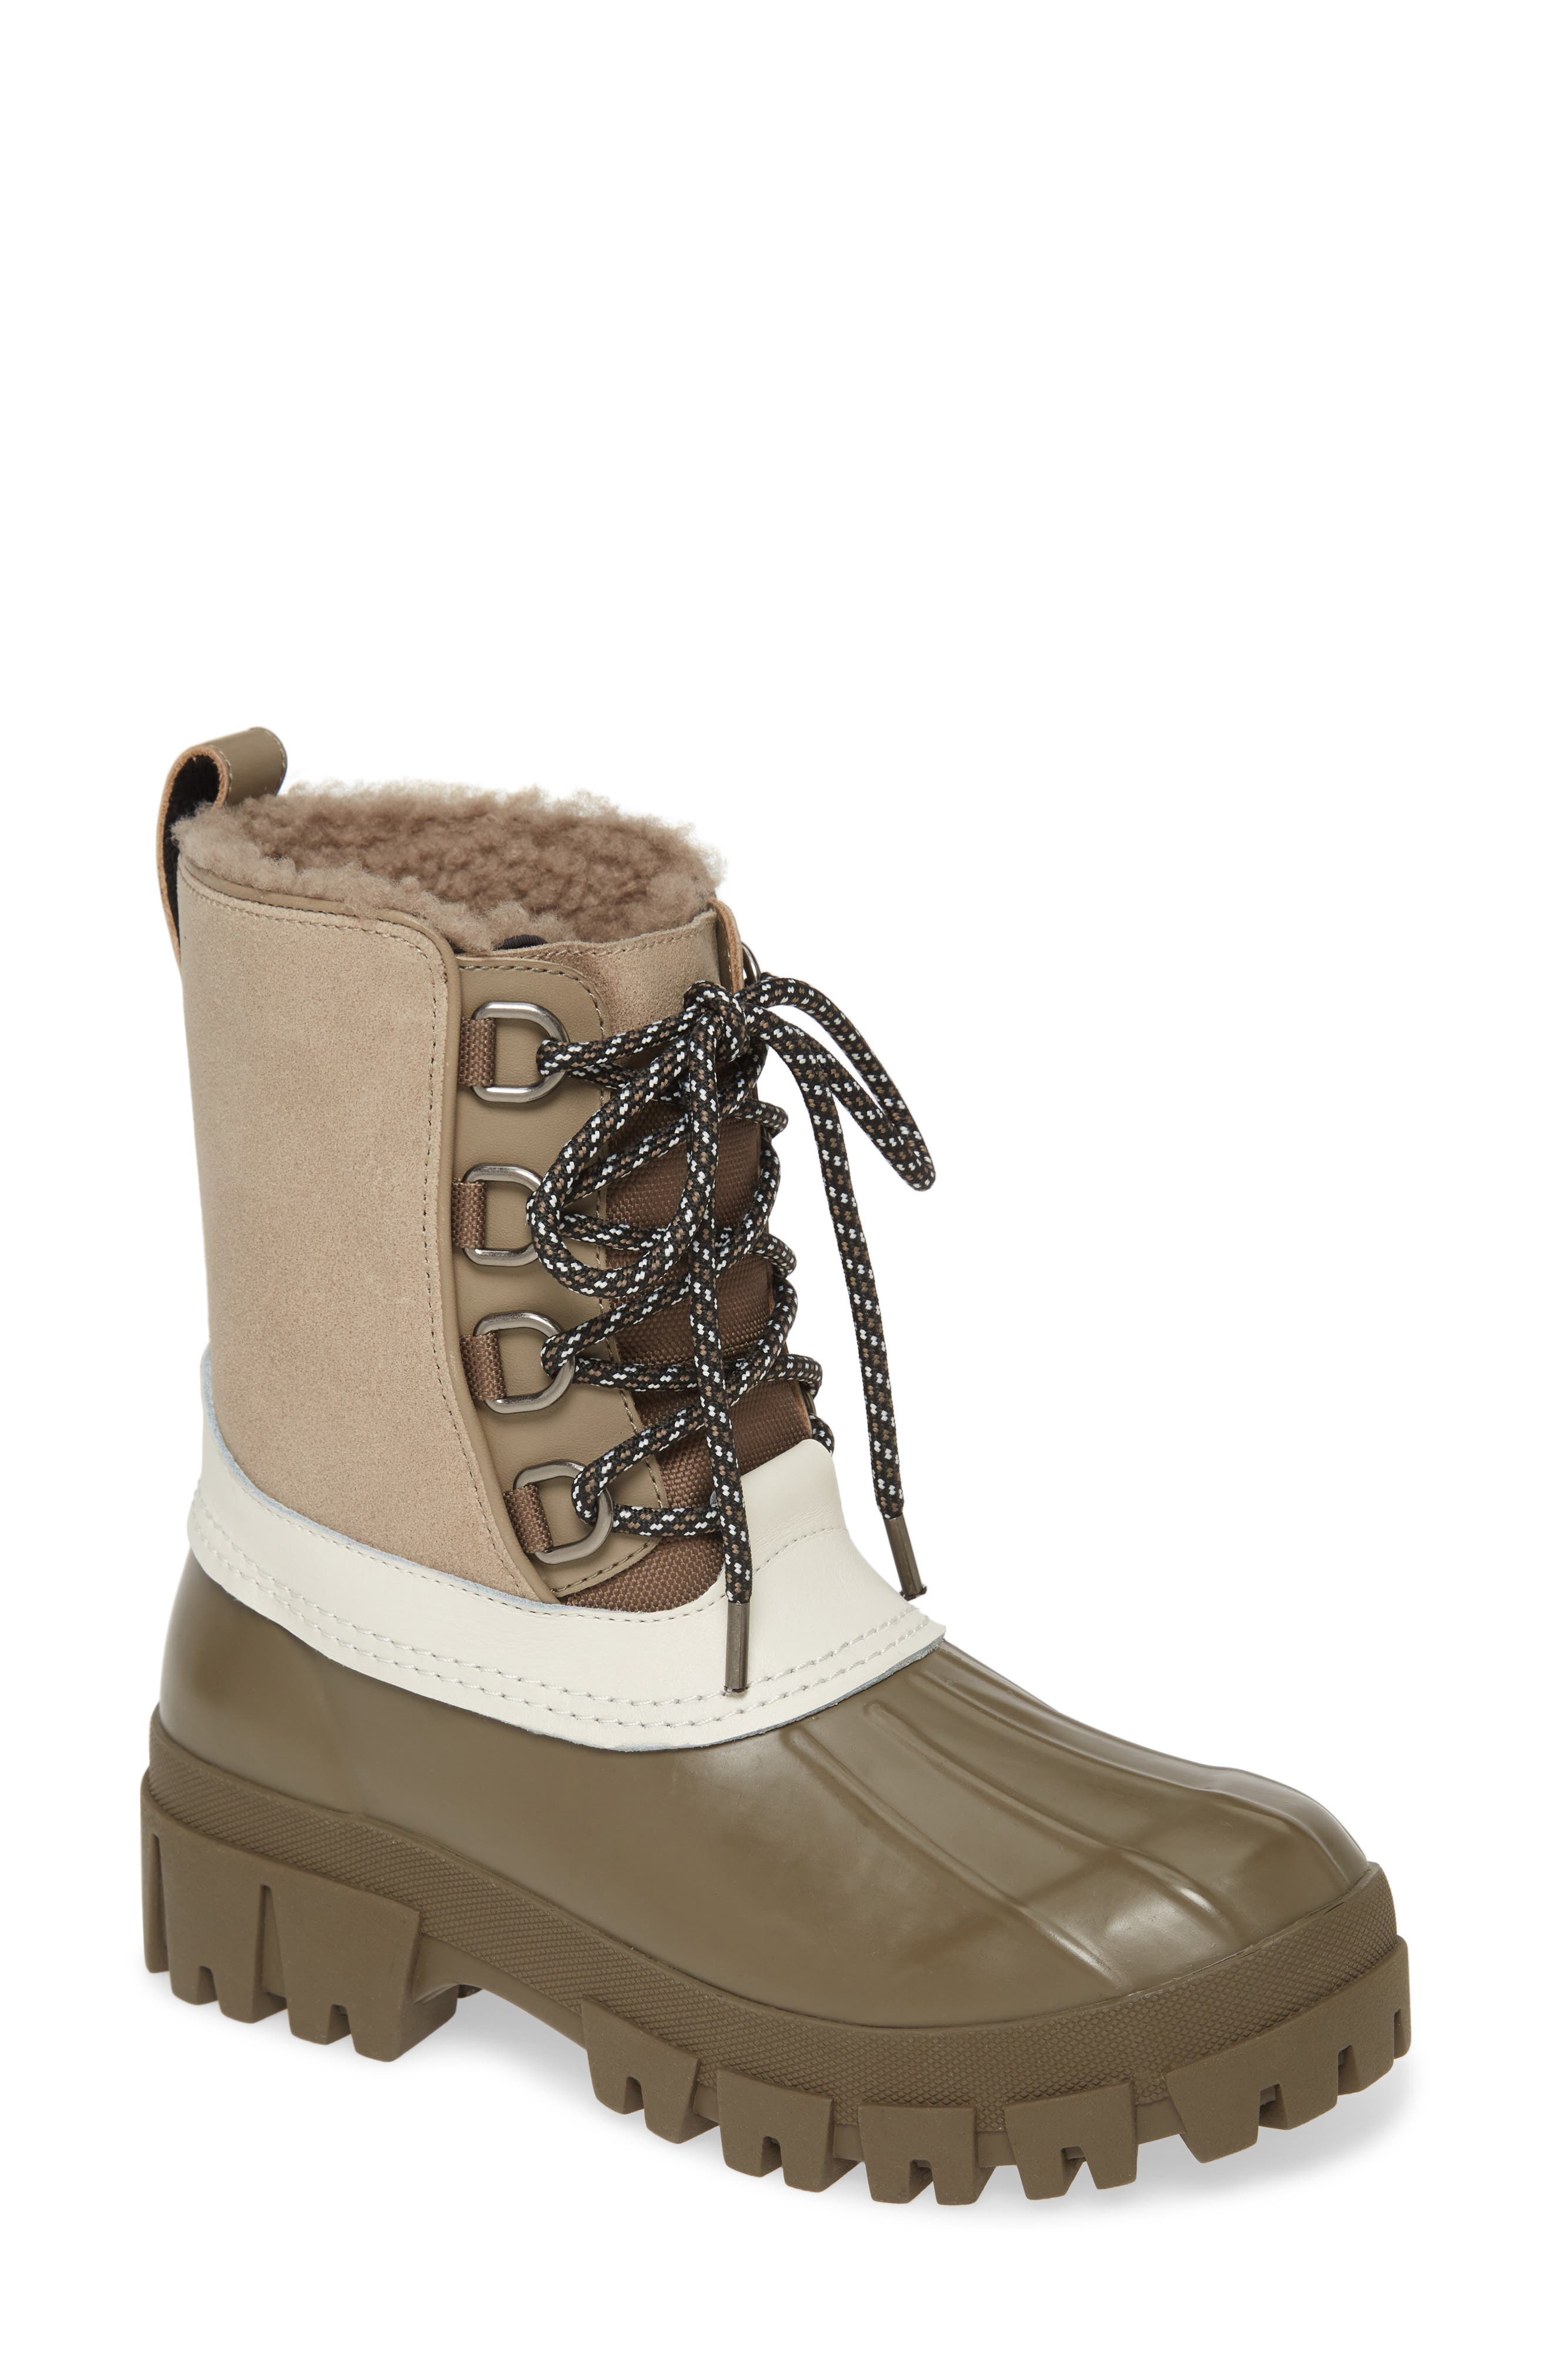 winter boots nordstrom rack